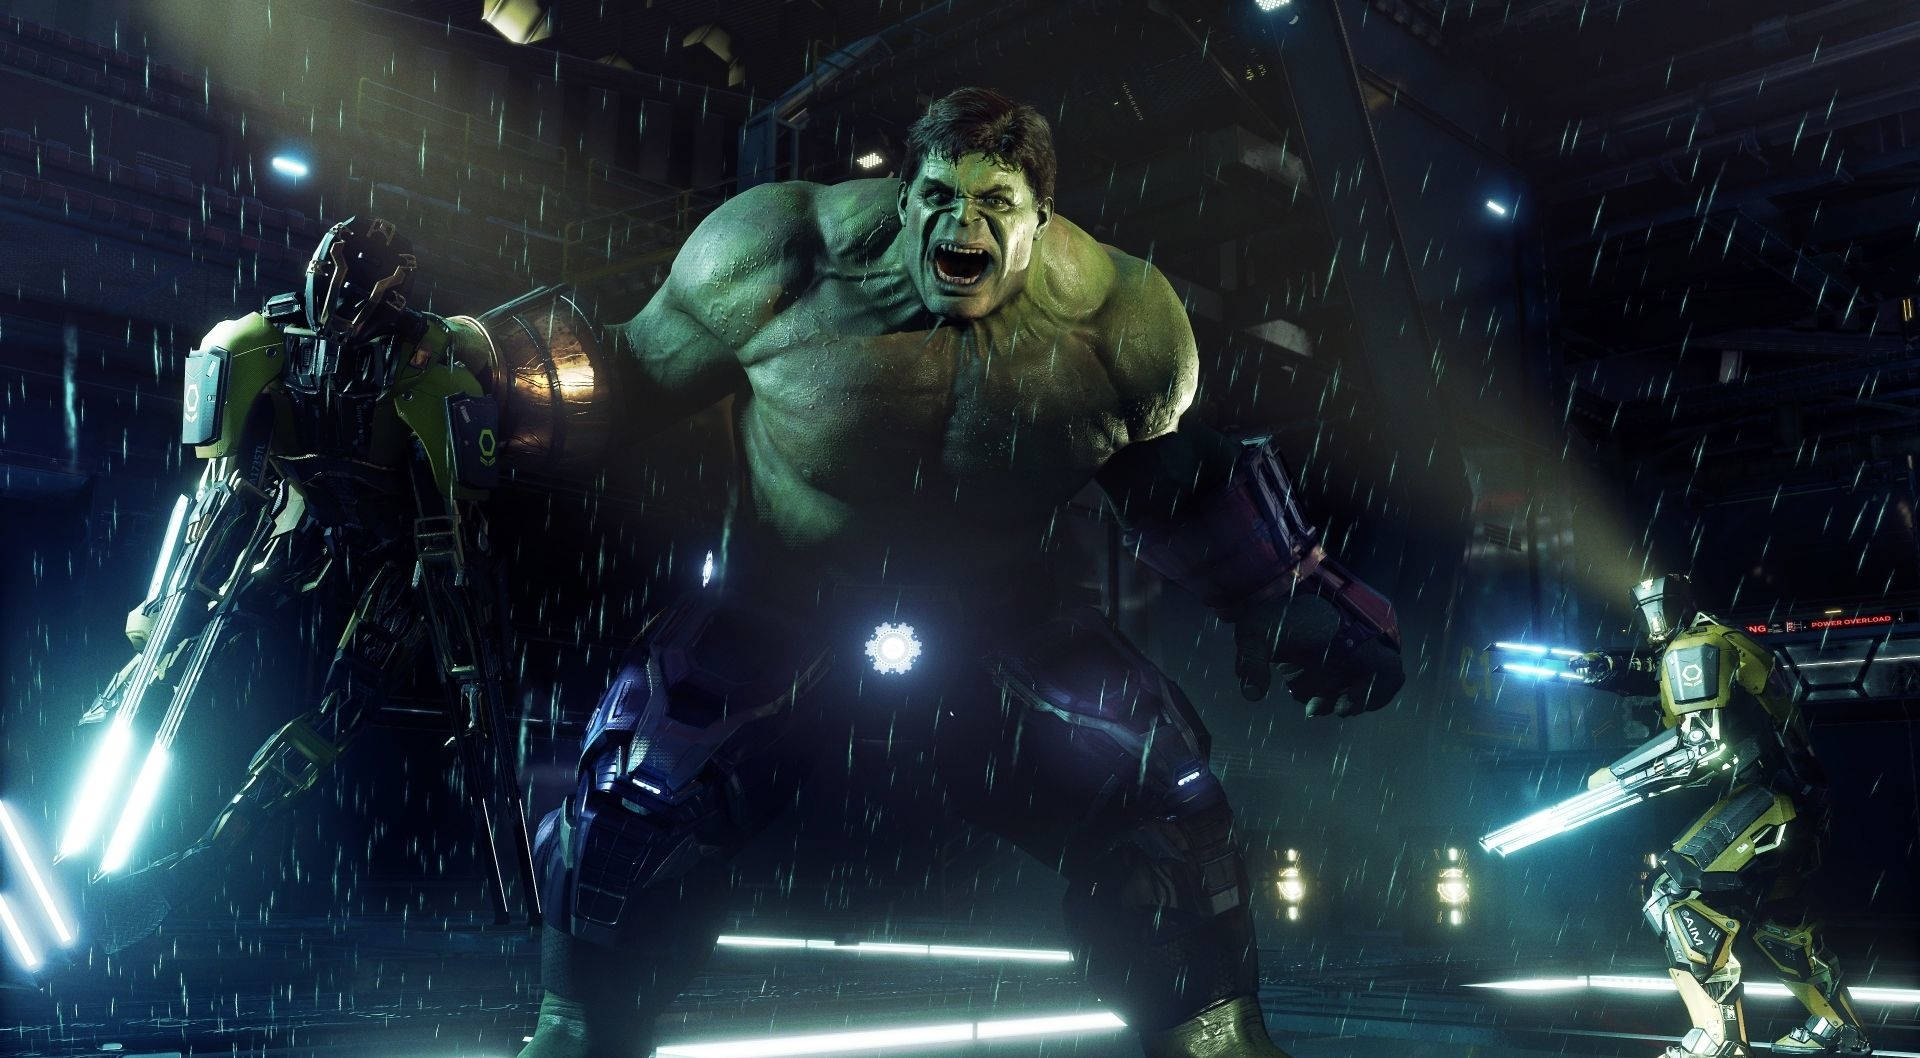 The Hulk Avengers PS4 Game Wallpaper